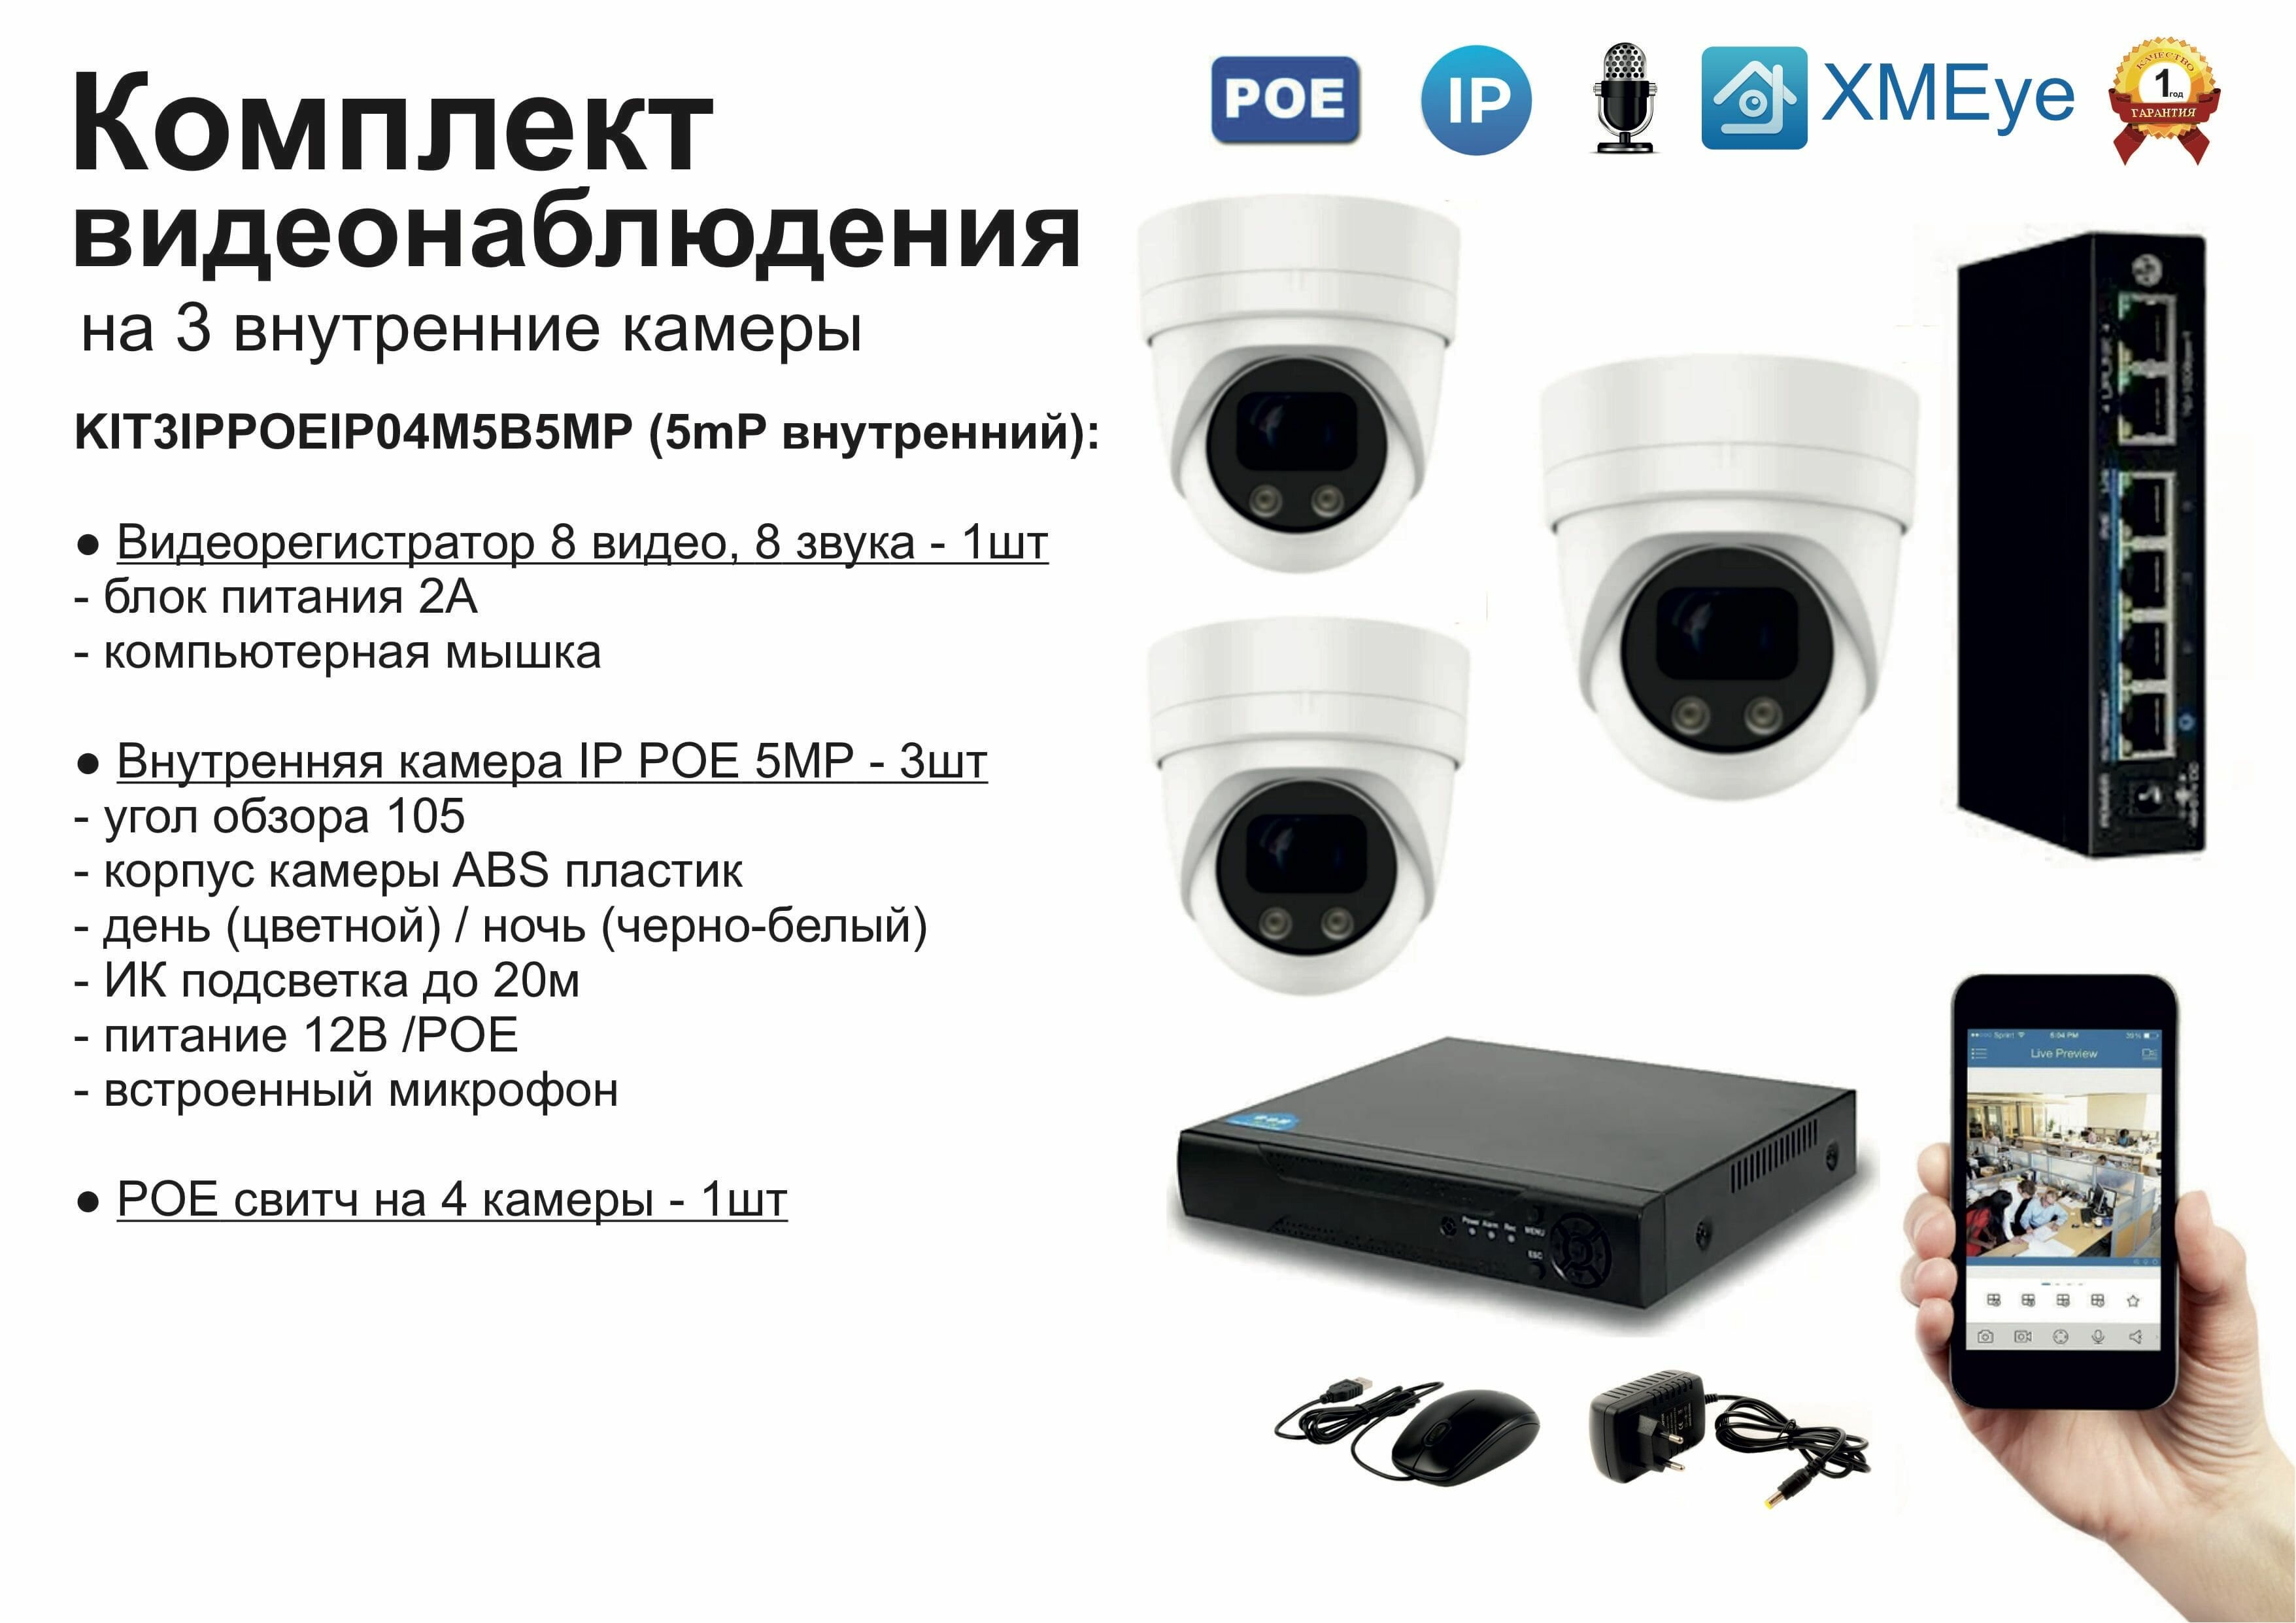 Комплект видеонаблюдения IP POE на 3 камеры. Внутренний 5мП